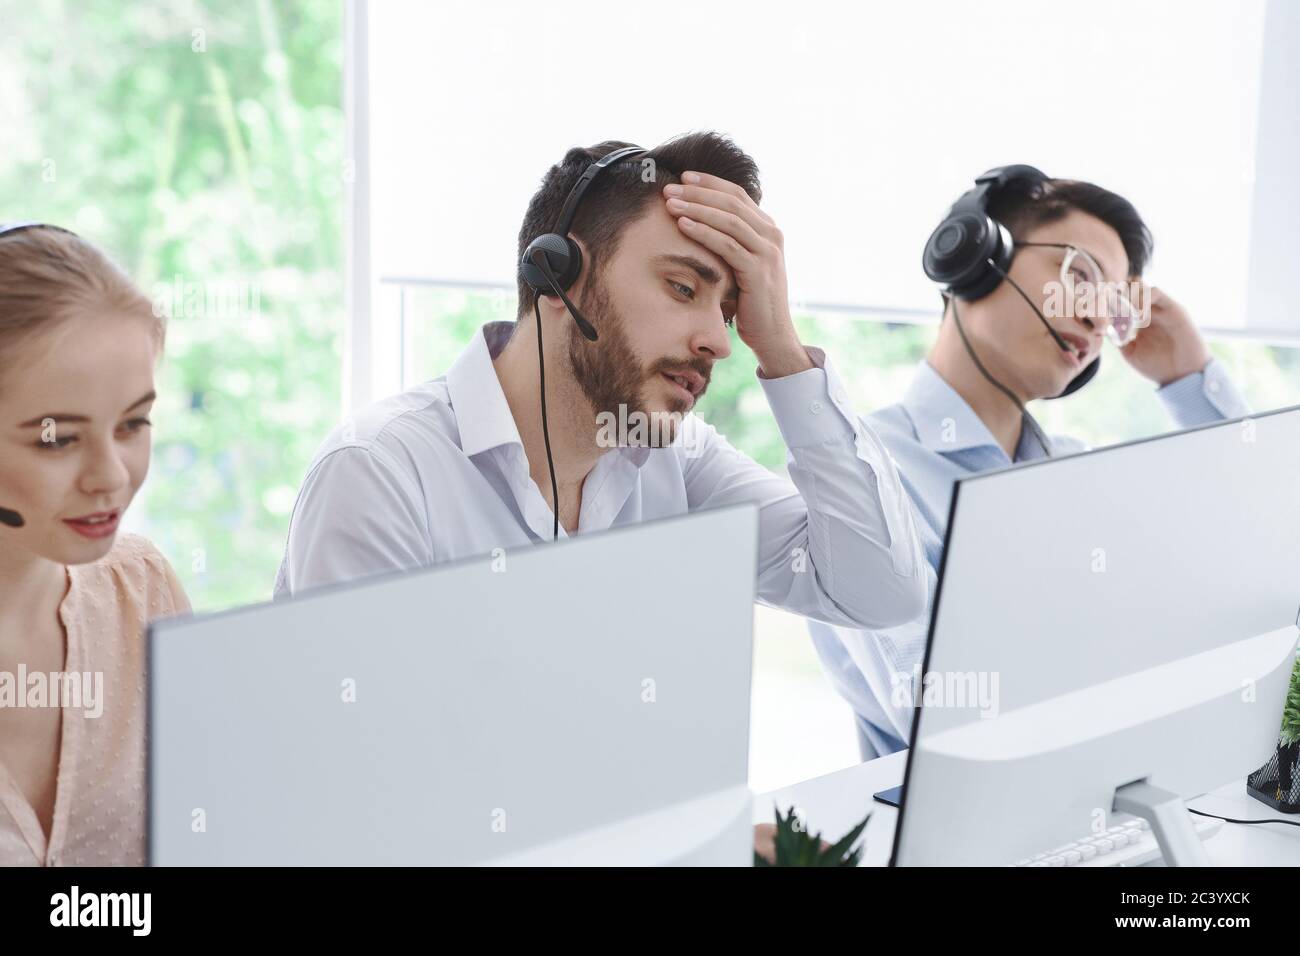 Un opérateur de centre d'appels fatigué et ses collègues communiquent avec les clients dans un bureau à espace ouvert Banque D'Images